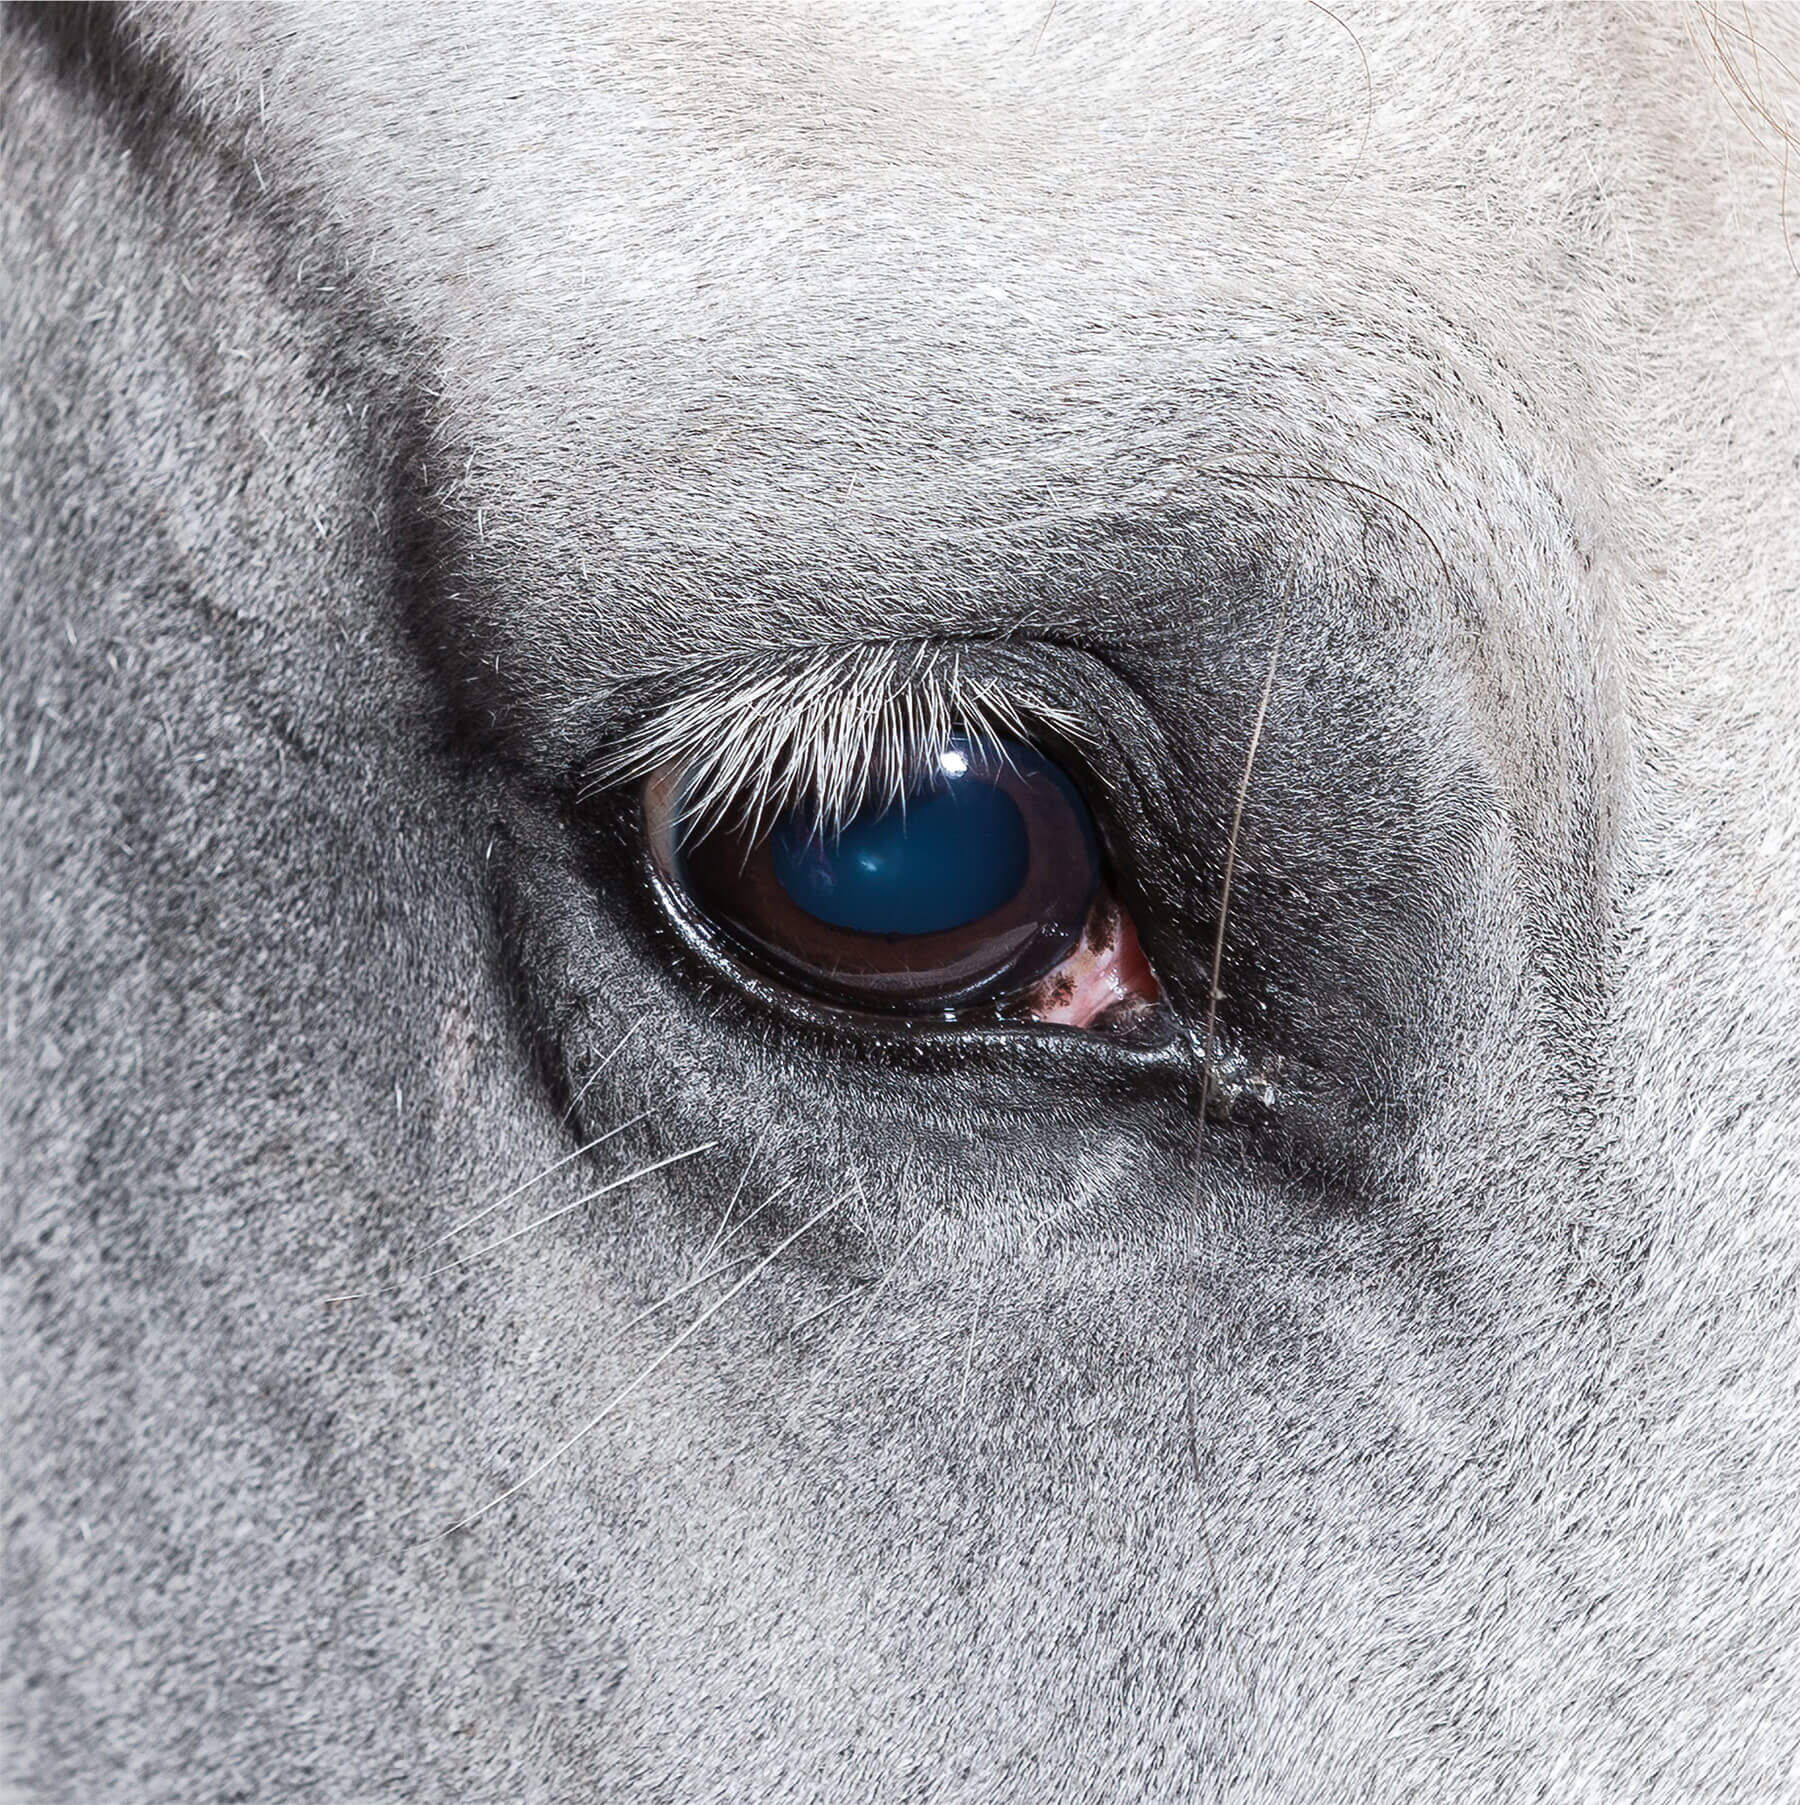 Fotoshooting mit Pferd: Blaubraune Pupille eines weissen Pferdes